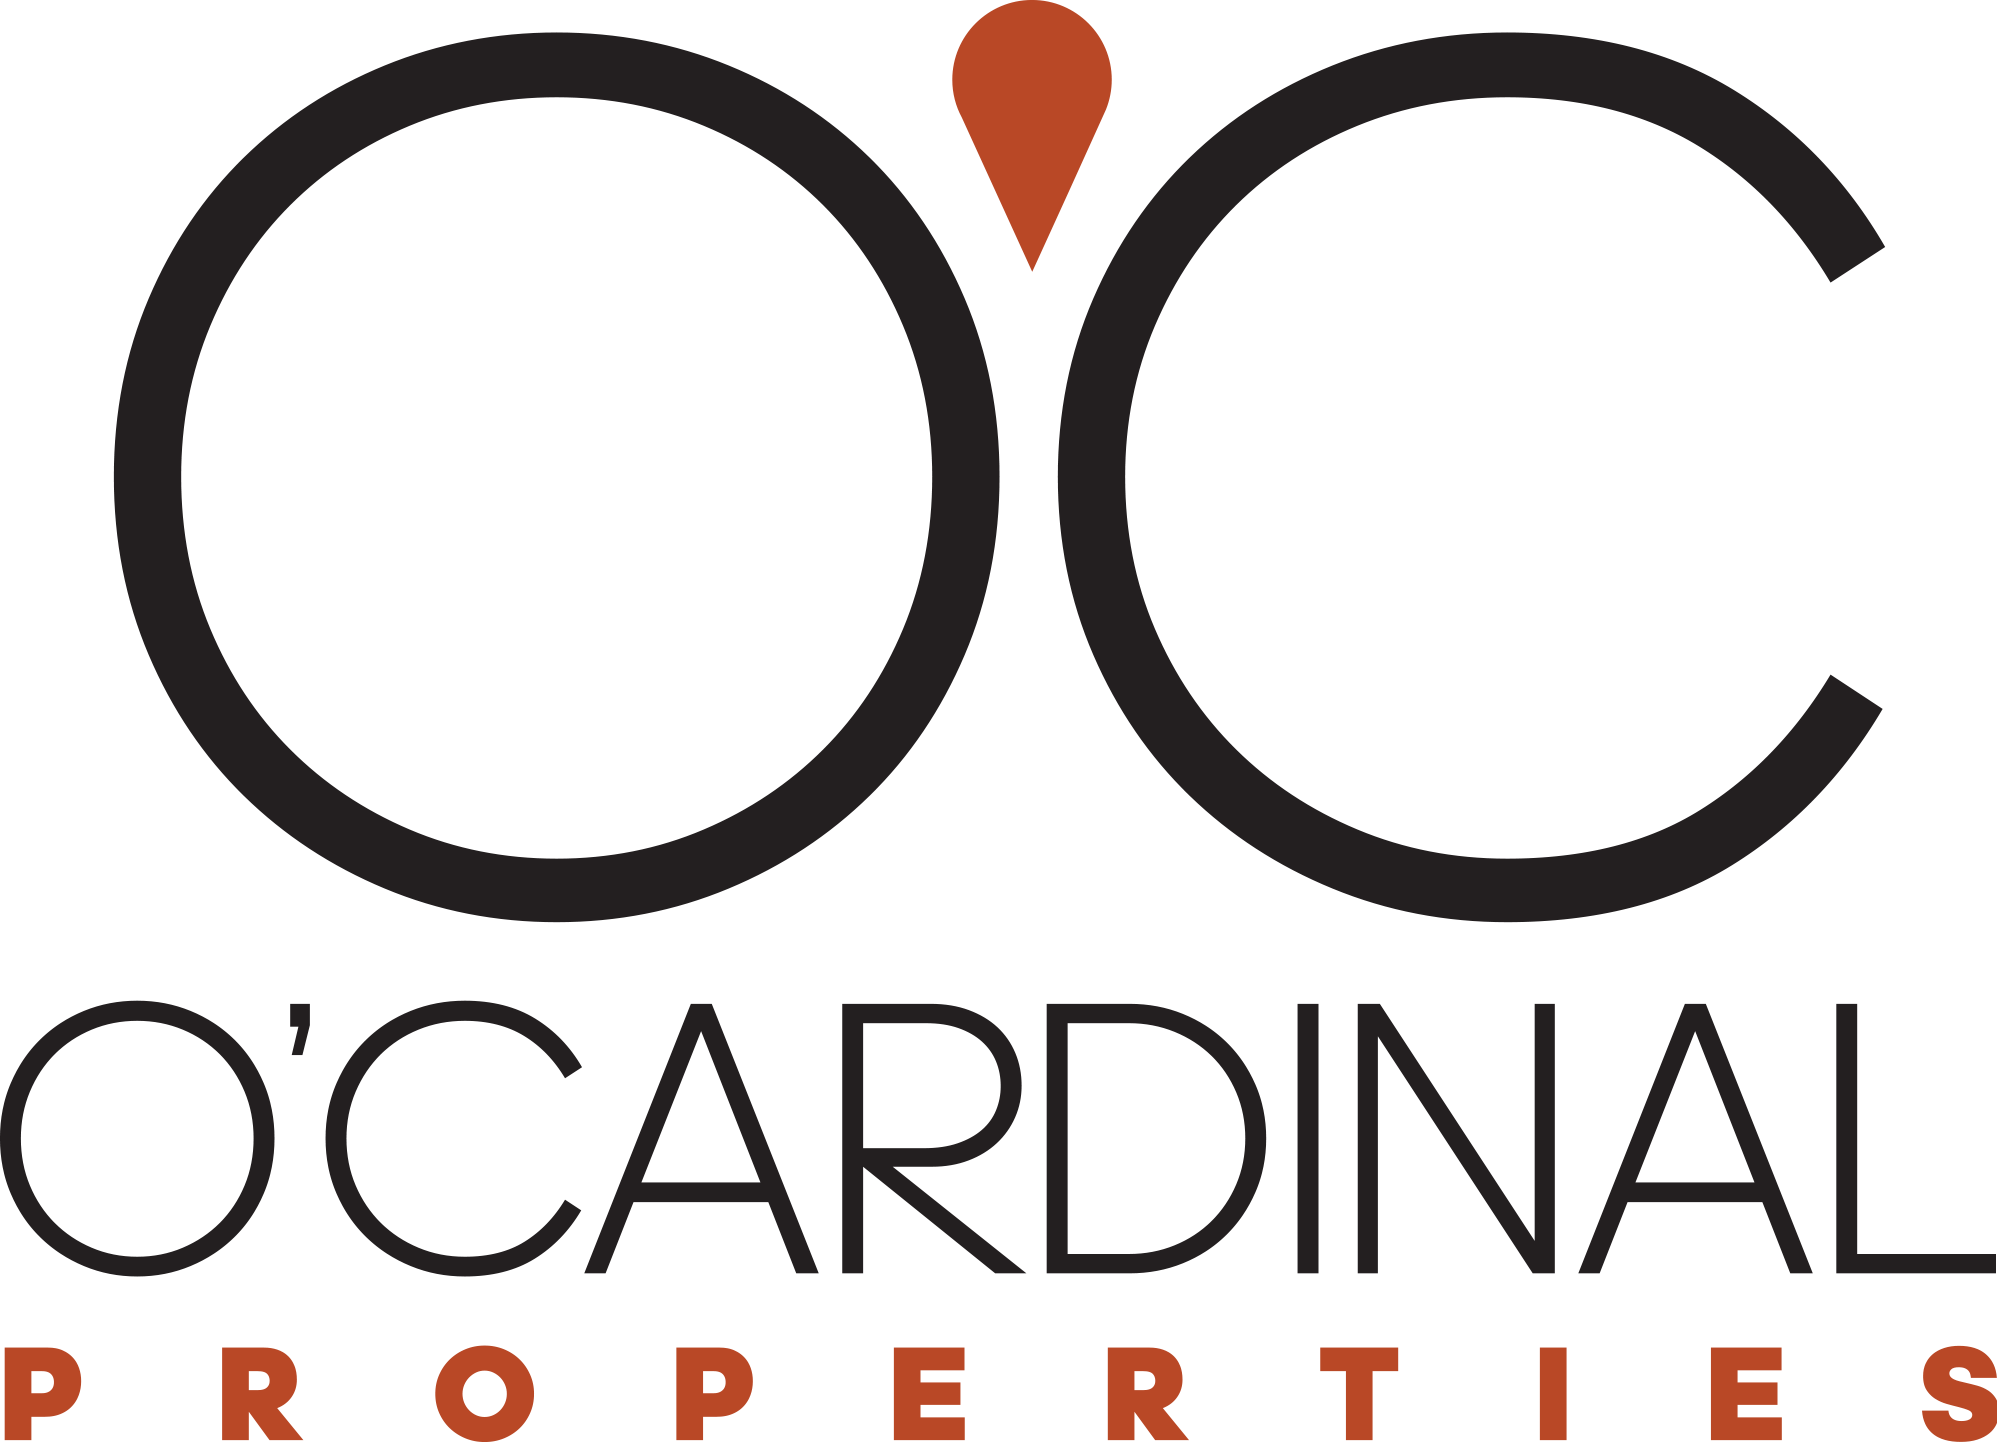 O'Cardinal Properties